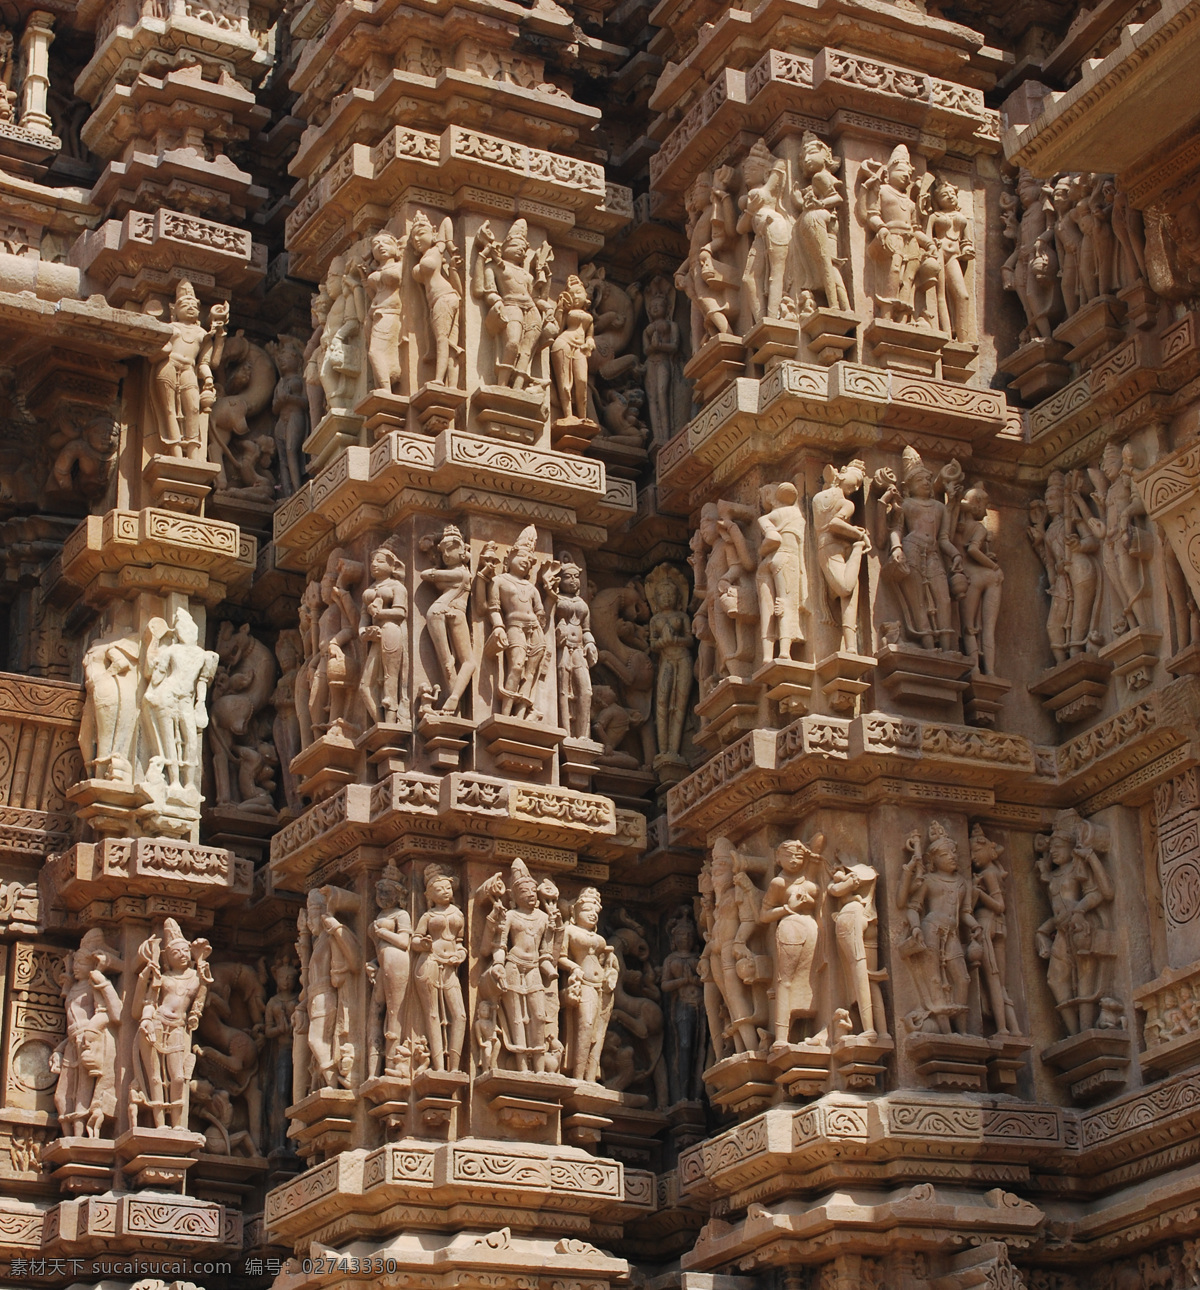 印度 雕刻 人物 建筑设计 印度中央邦 印度教堂 庙宇 雕刻建筑 名胜古迹 古老建筑 著名建筑 旅游景区 环境家居 黑色